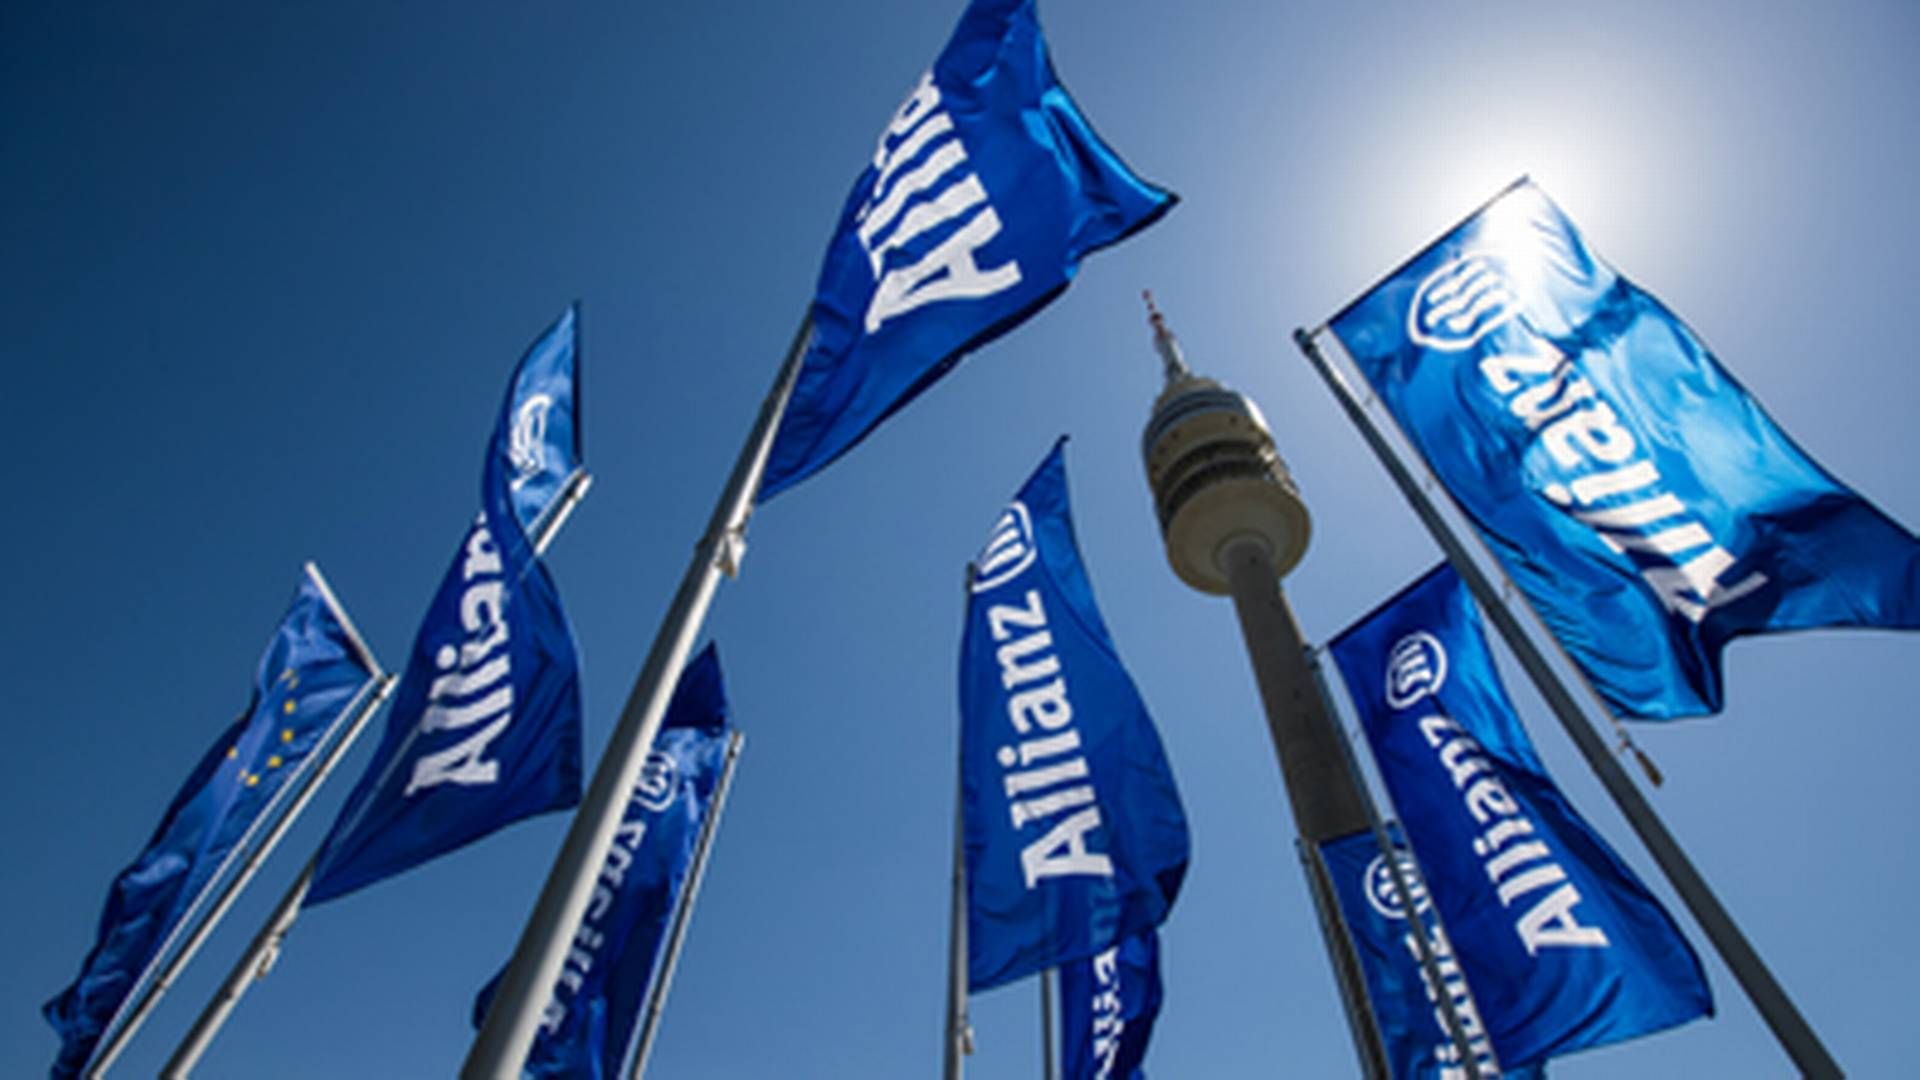 Allianz Trade er en del af den globale forsikringskoncern Allianz. | Foto: Allianz Bank/pr